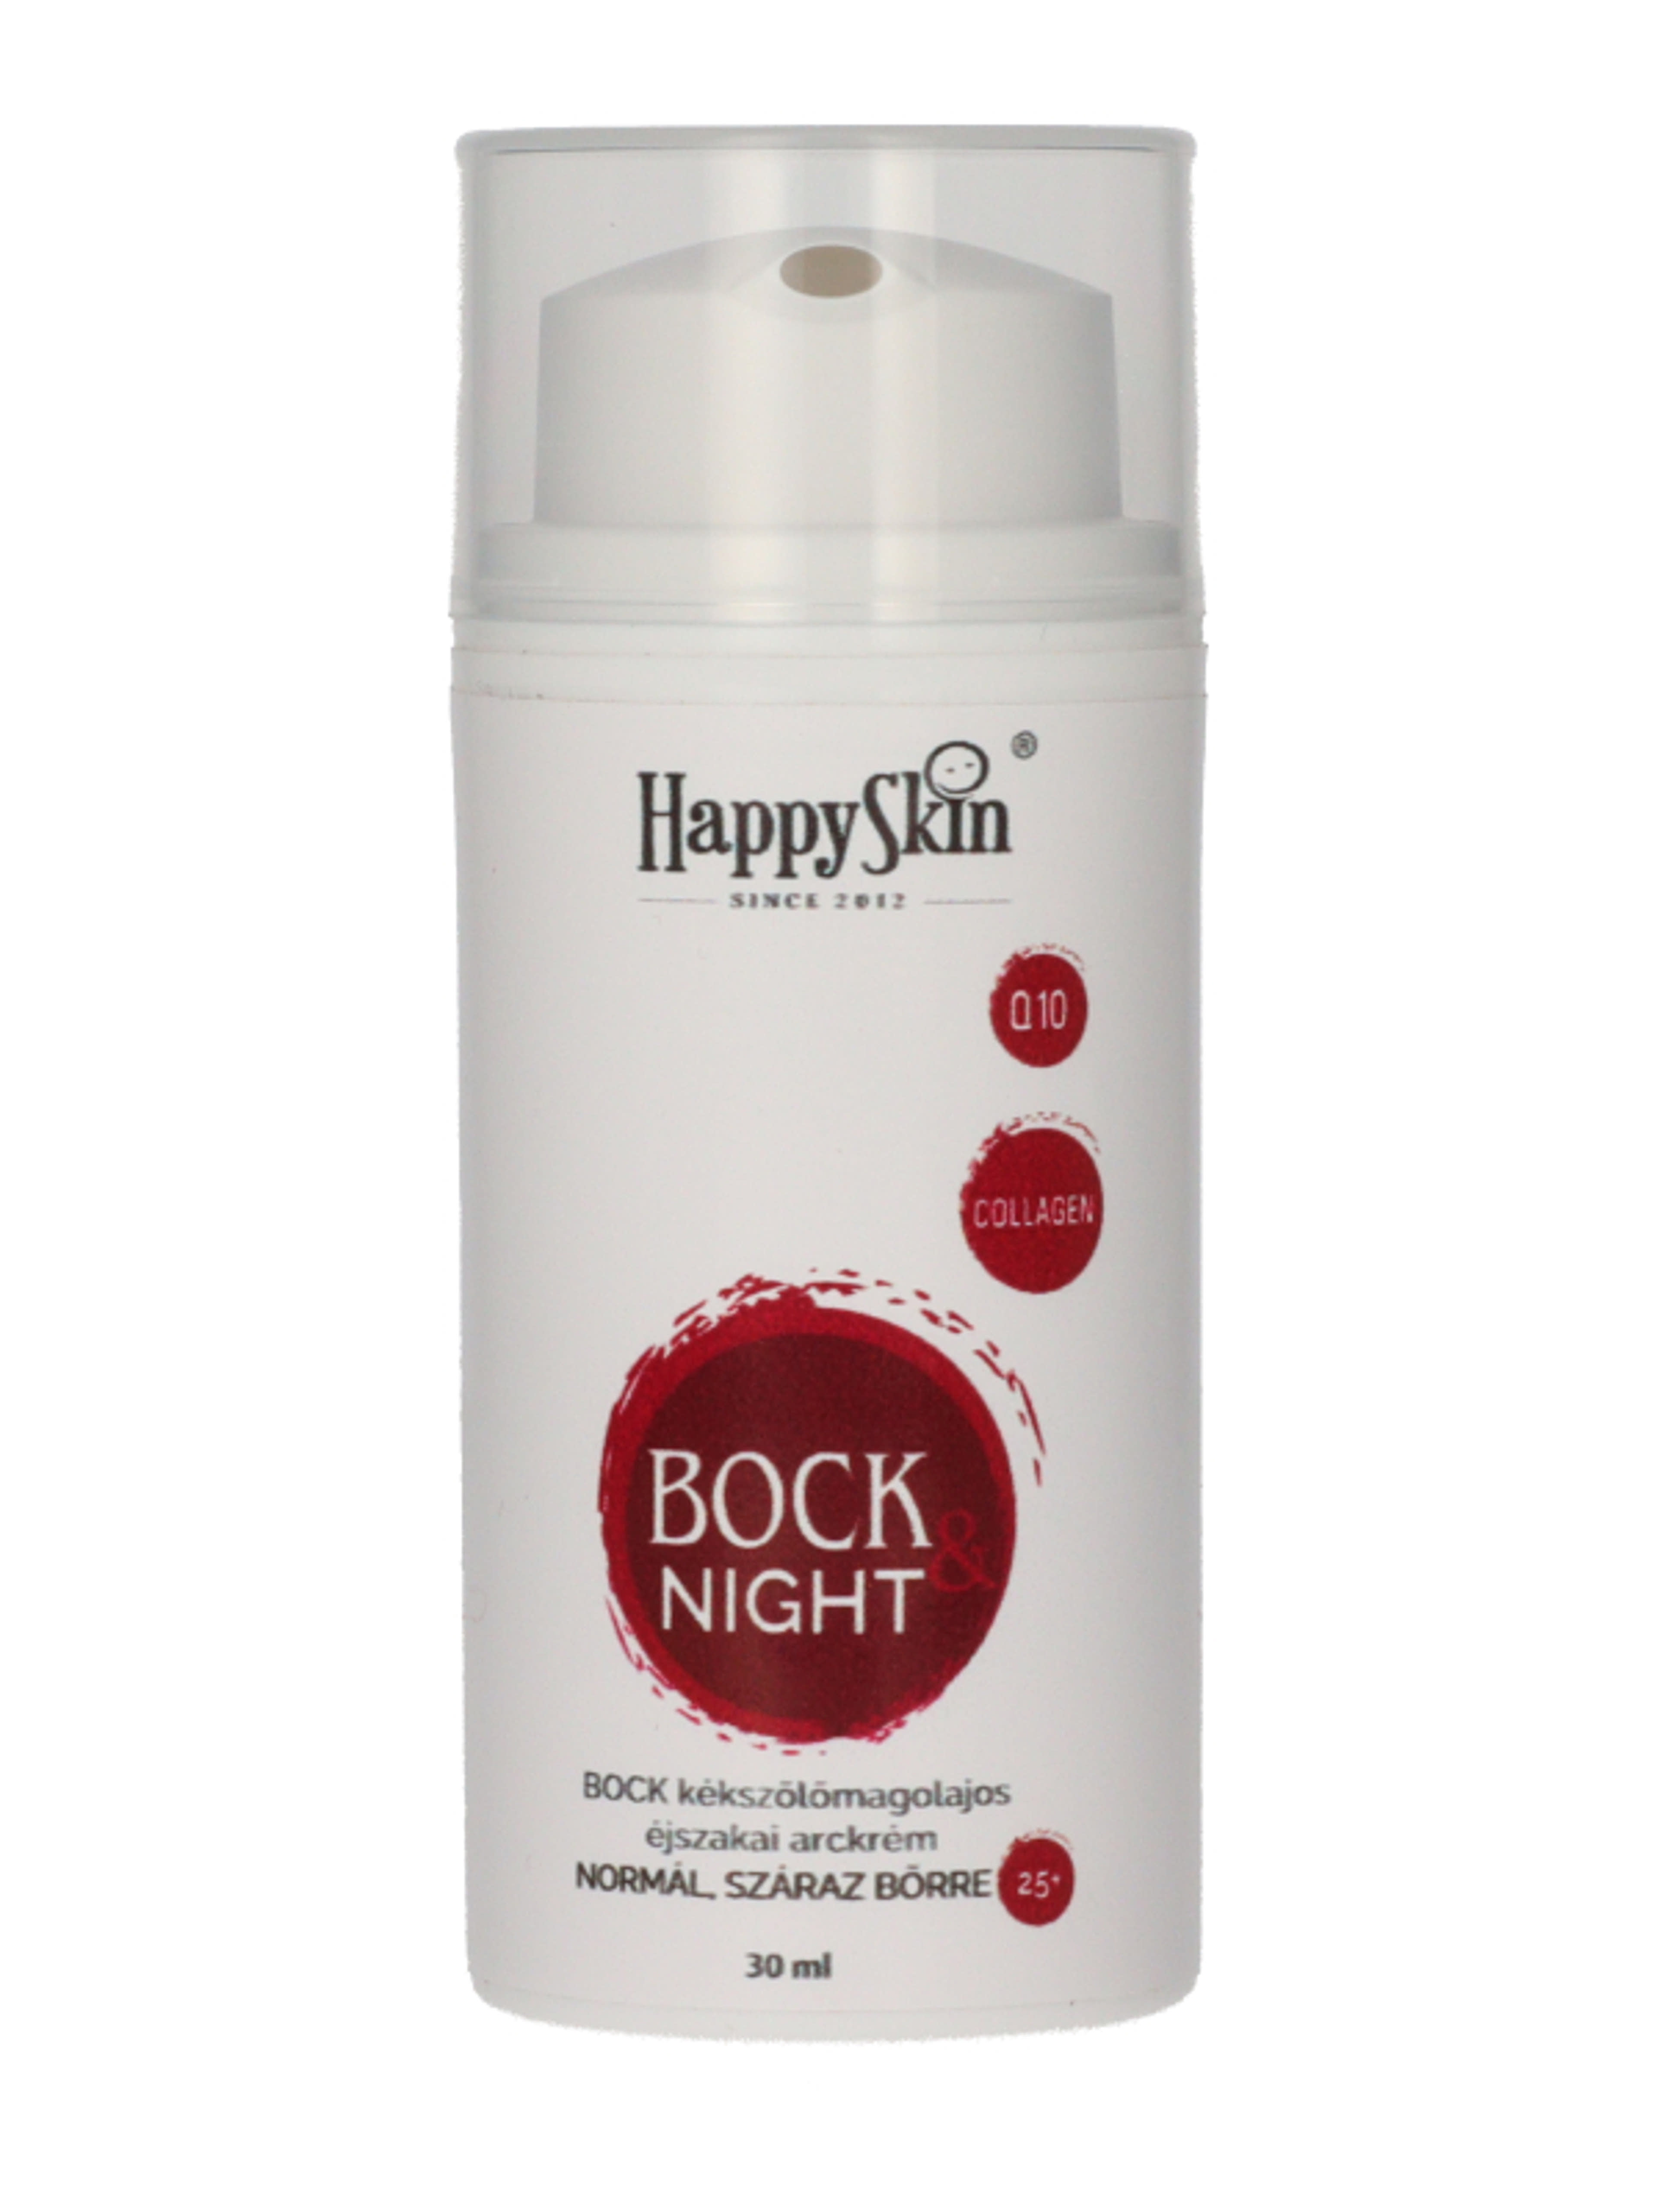 HappySkin Bock éjszakai arckrém kékszölőmagolajos - 30 ml